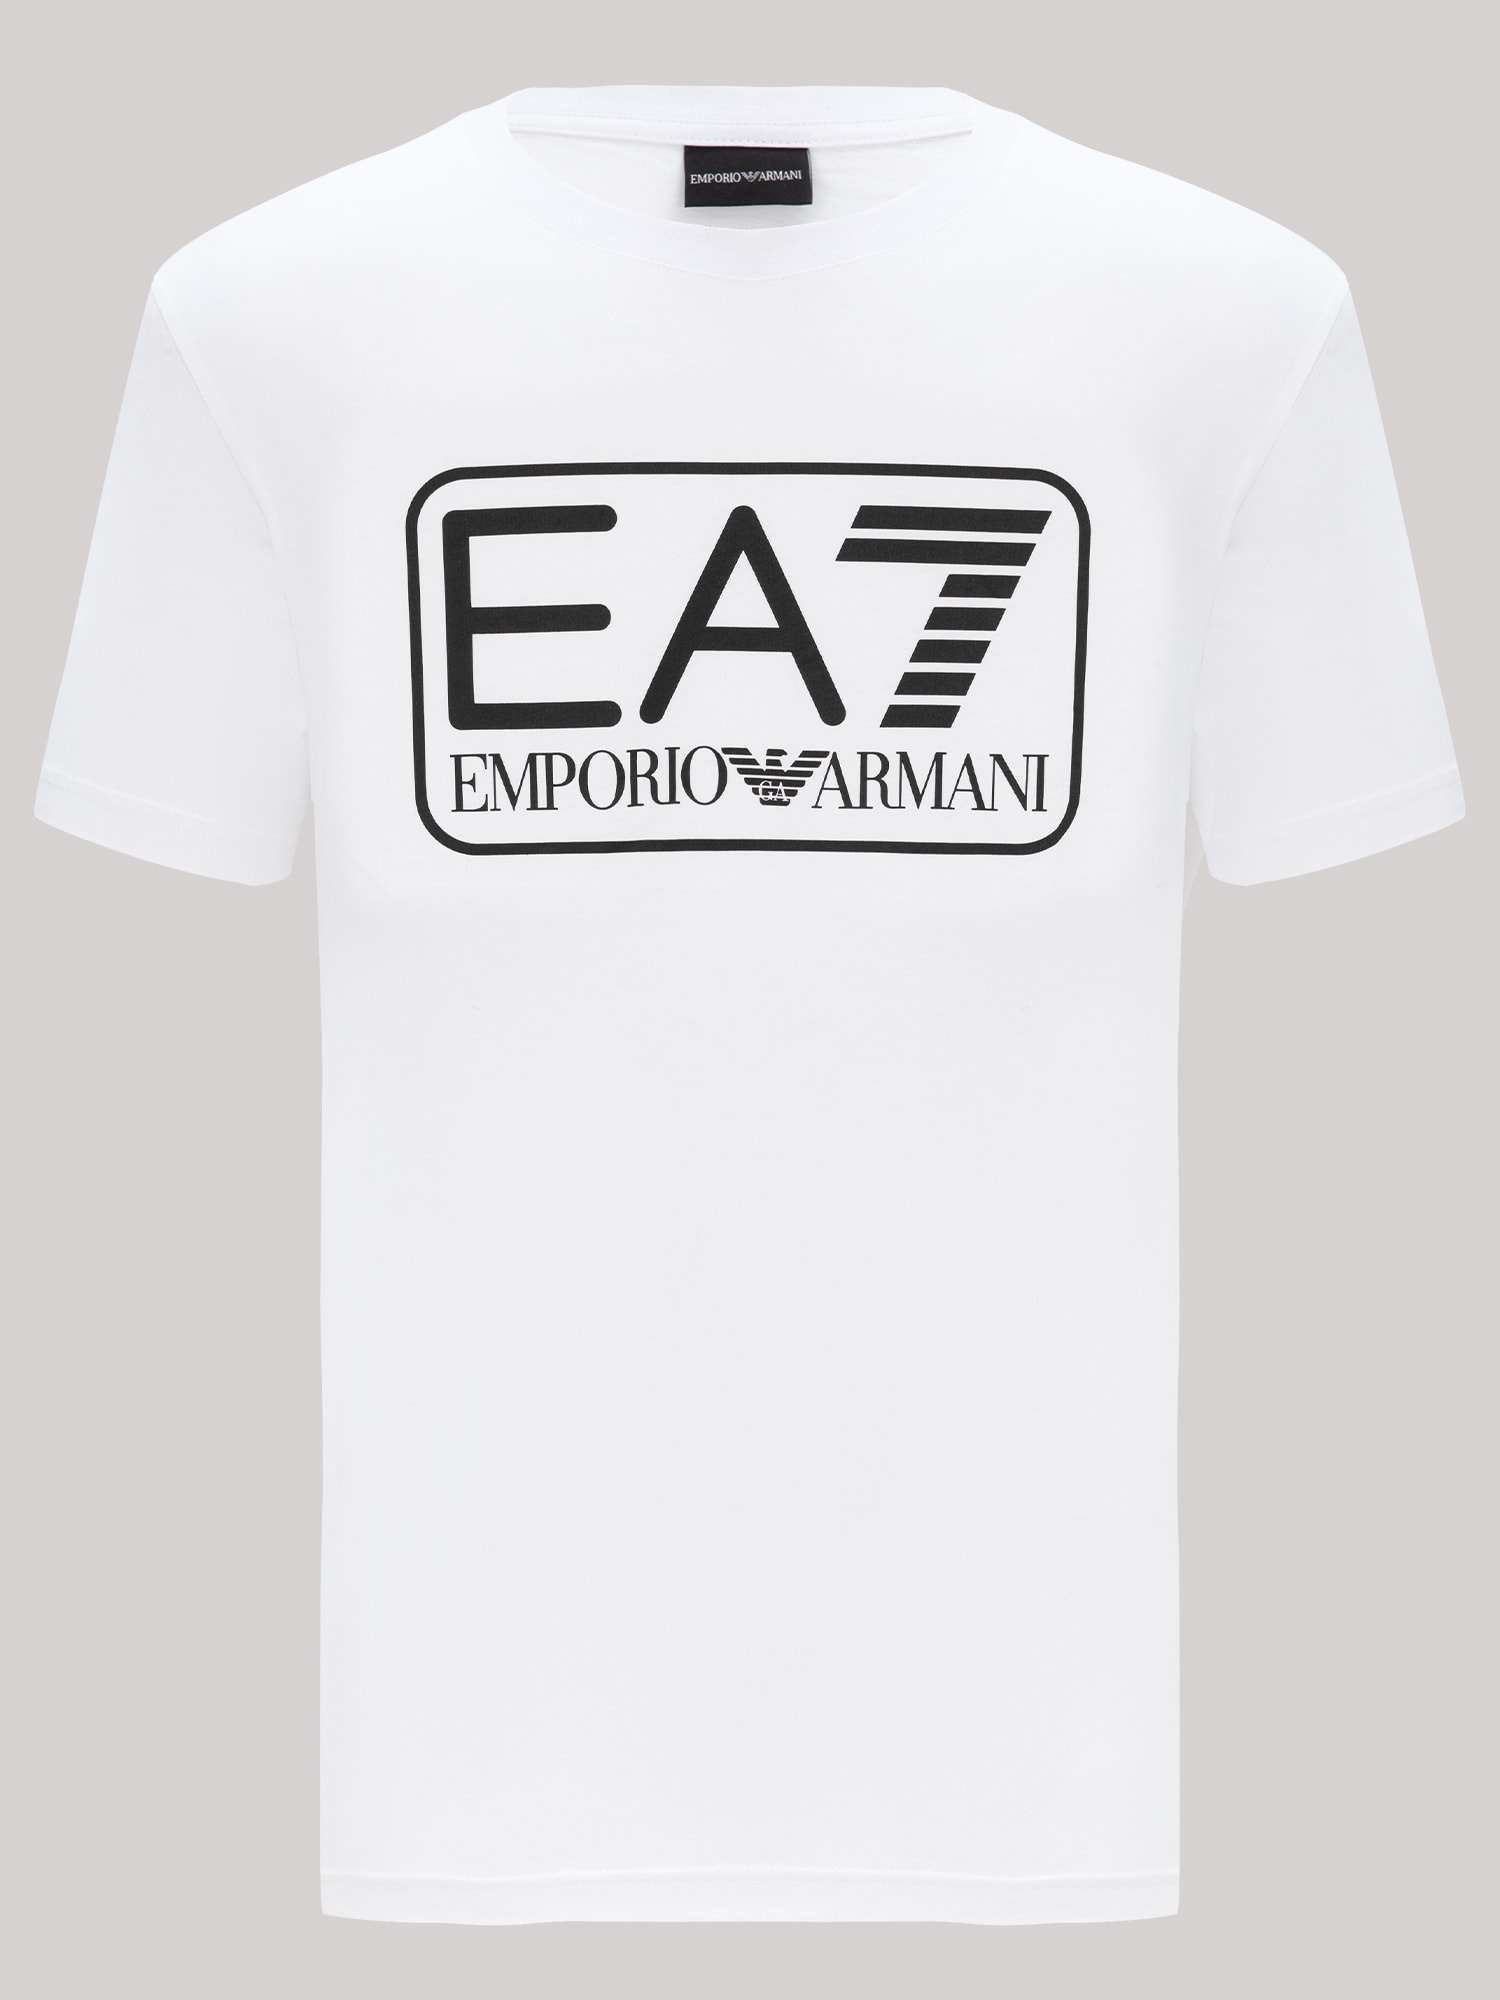 Emporio Armani EA7 t-shirt (3 av 11)